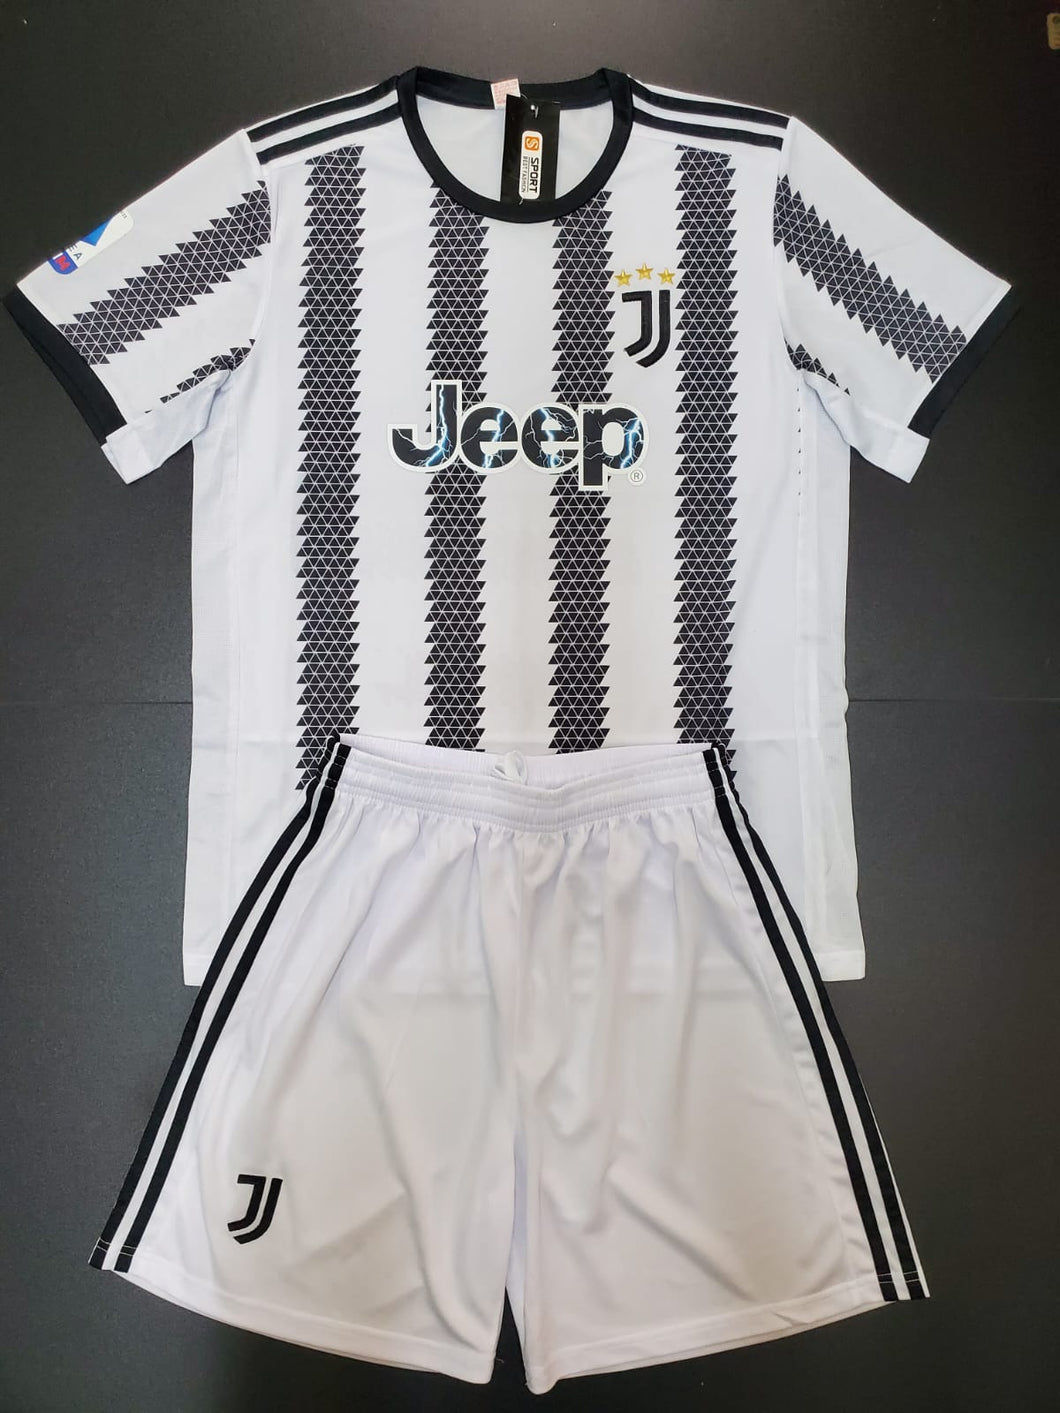 Juventus 22/23 Youth Home Kit